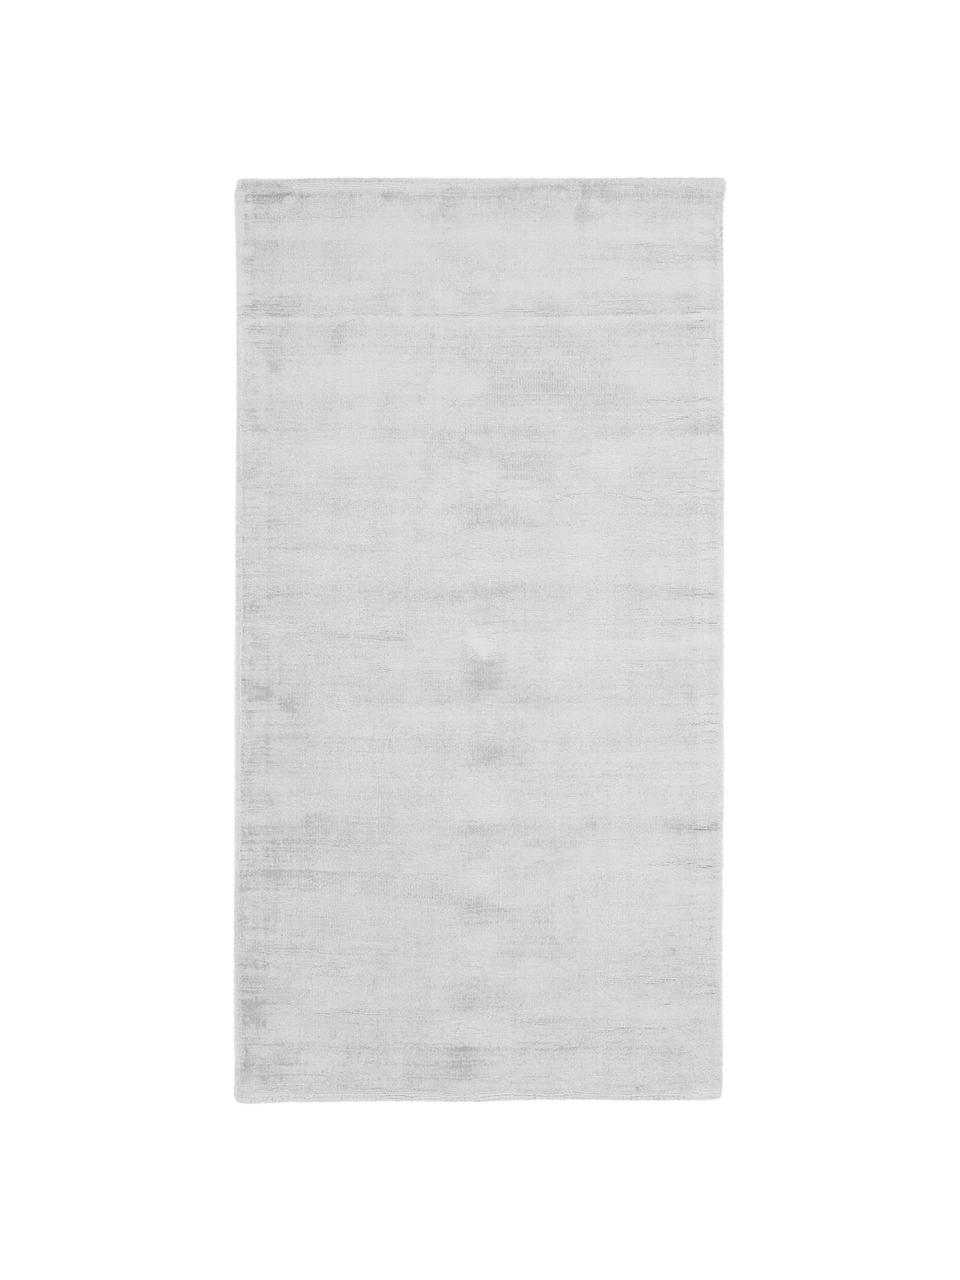 Tappeto in viscosa color grigio argento tessuto a mano Jane, Retro: 100% cotone, Grigio argento, Larg. 160 x Lung. 230 cm  (taglia M)